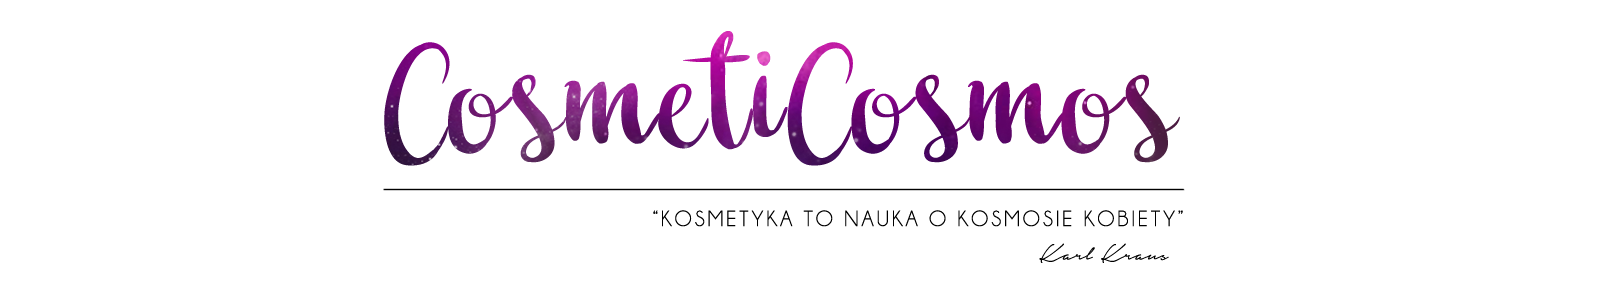 CosmetiCosmos - blog kosmetyczny: recenzje, porady, diy